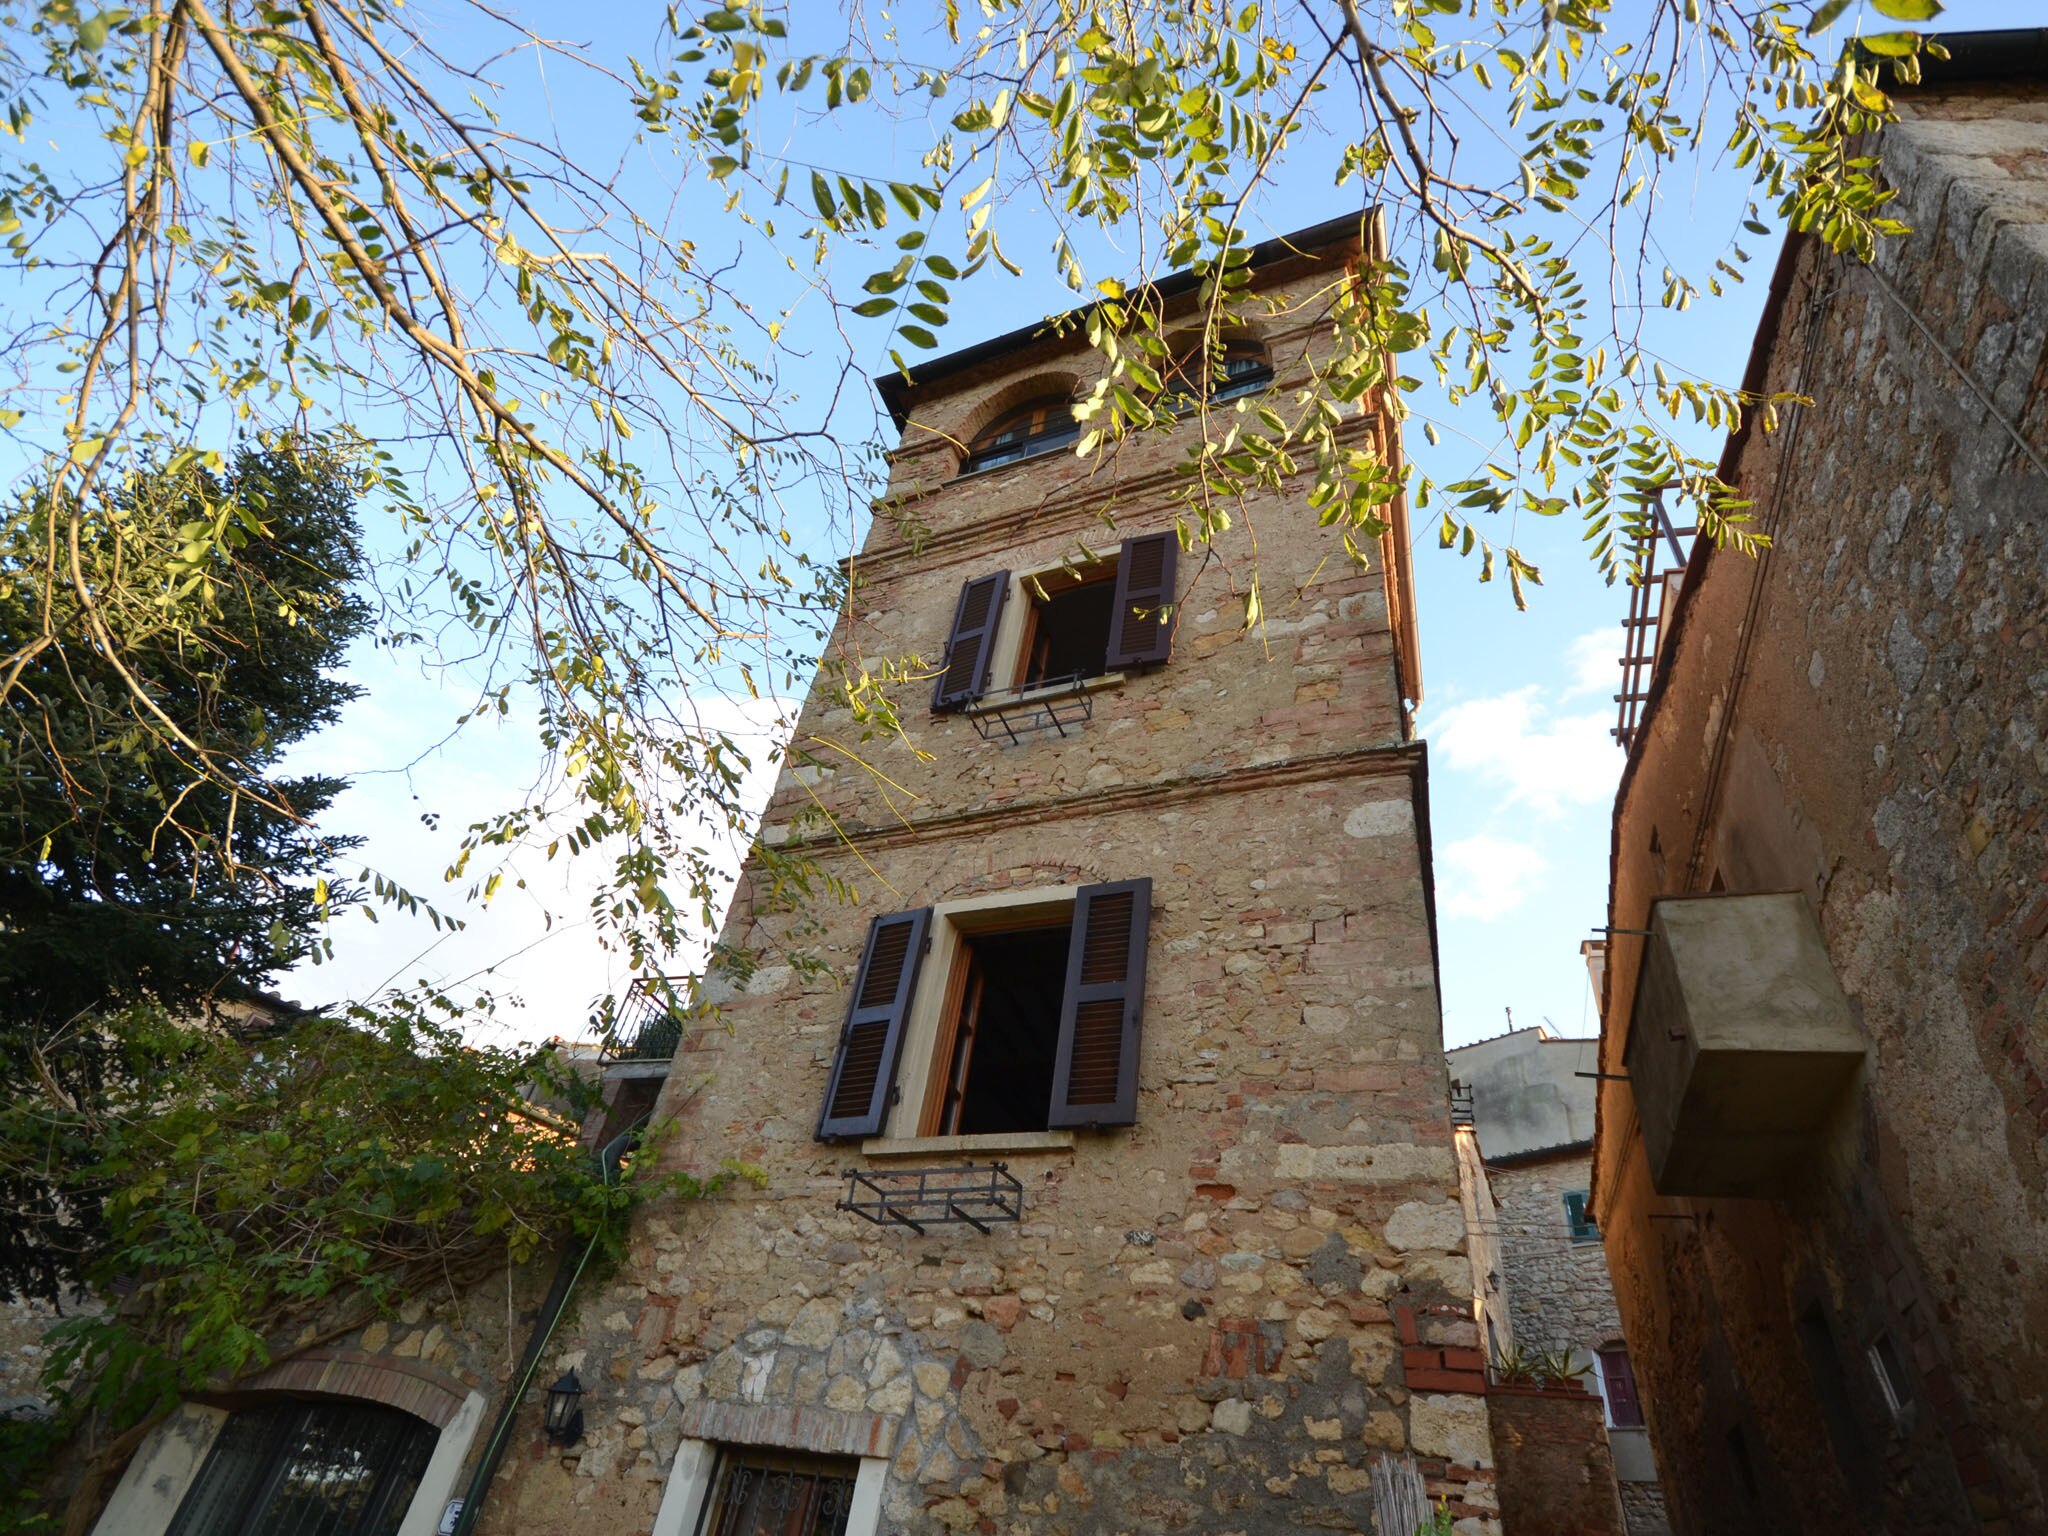 Un autre tour d'observation en Toscane